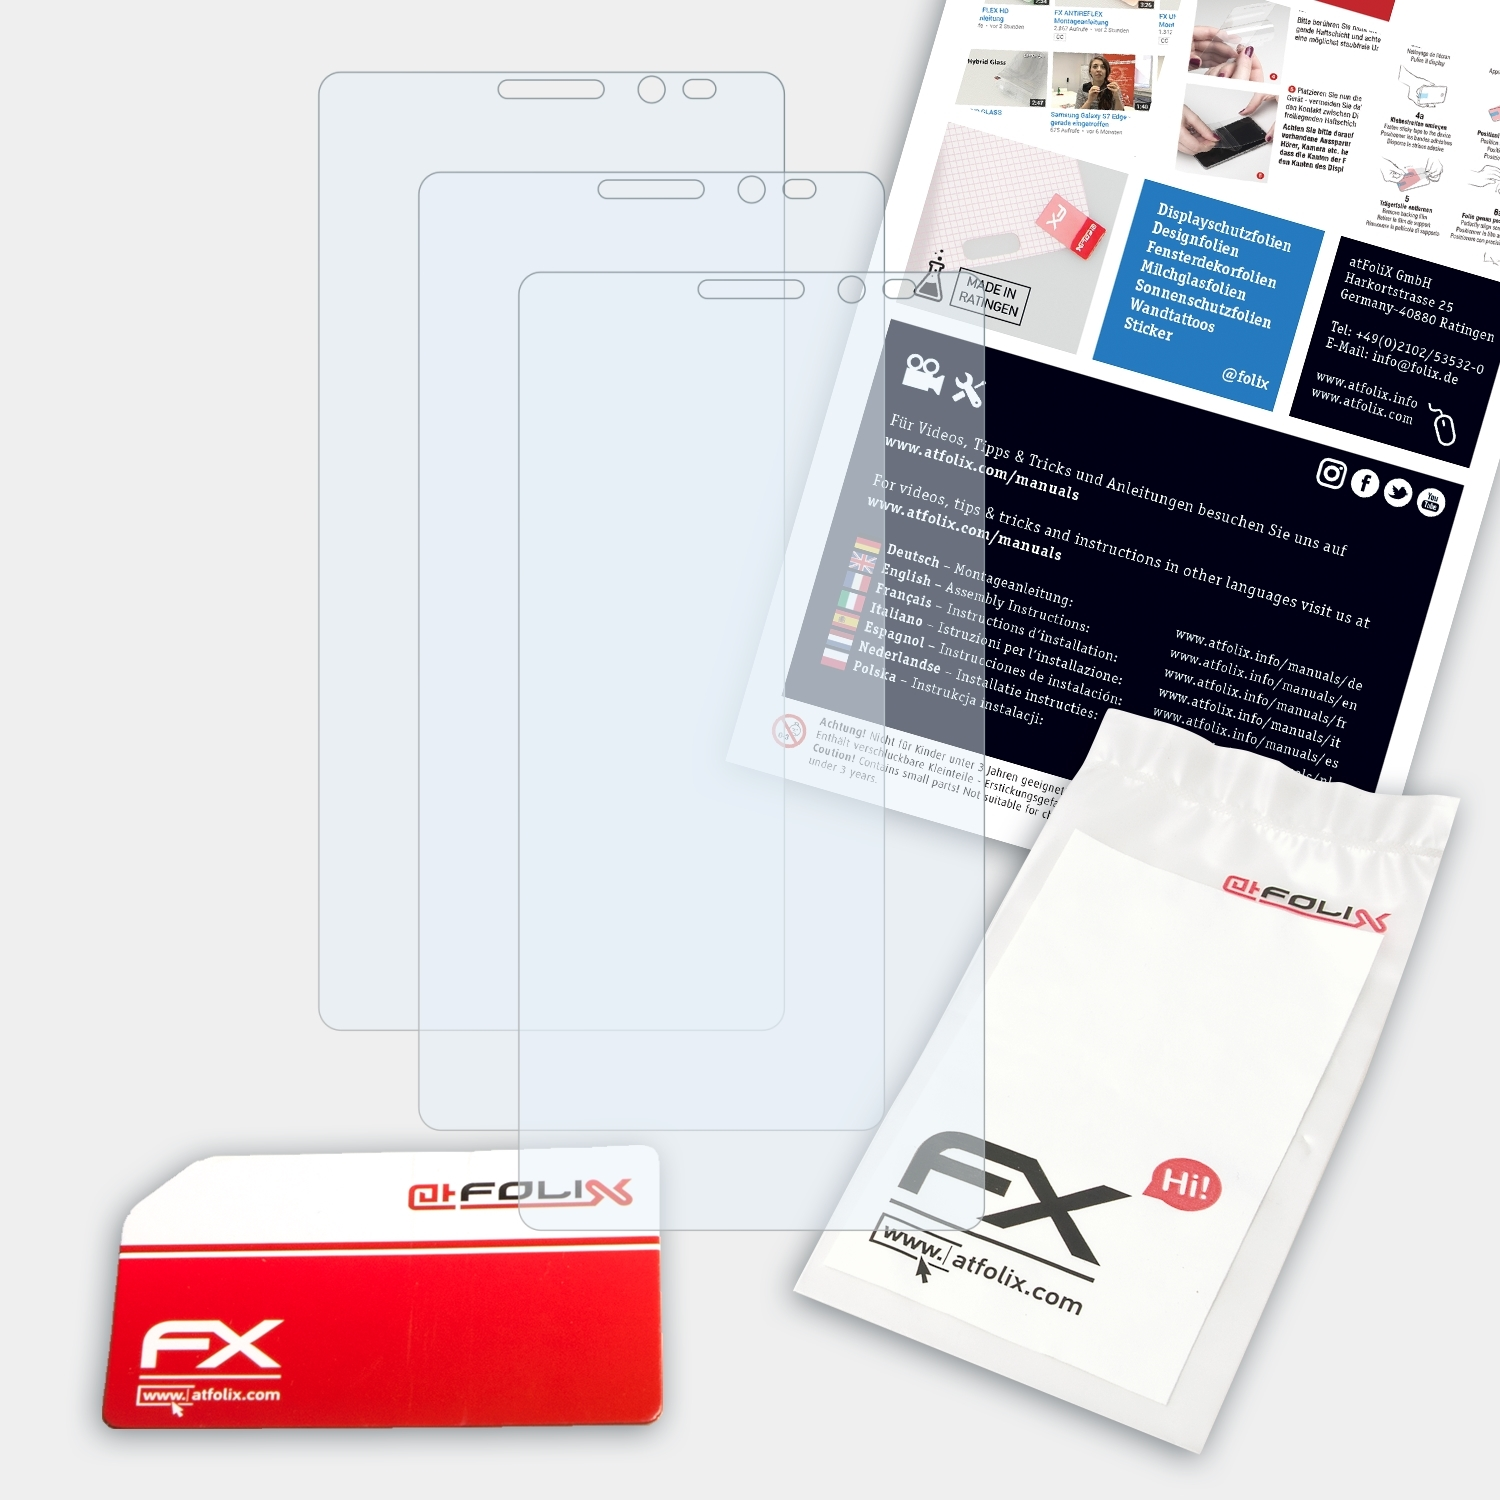 ATFOLIX 3x FX-Clear Plus) Lenovo Phab Displayschutz(für 2